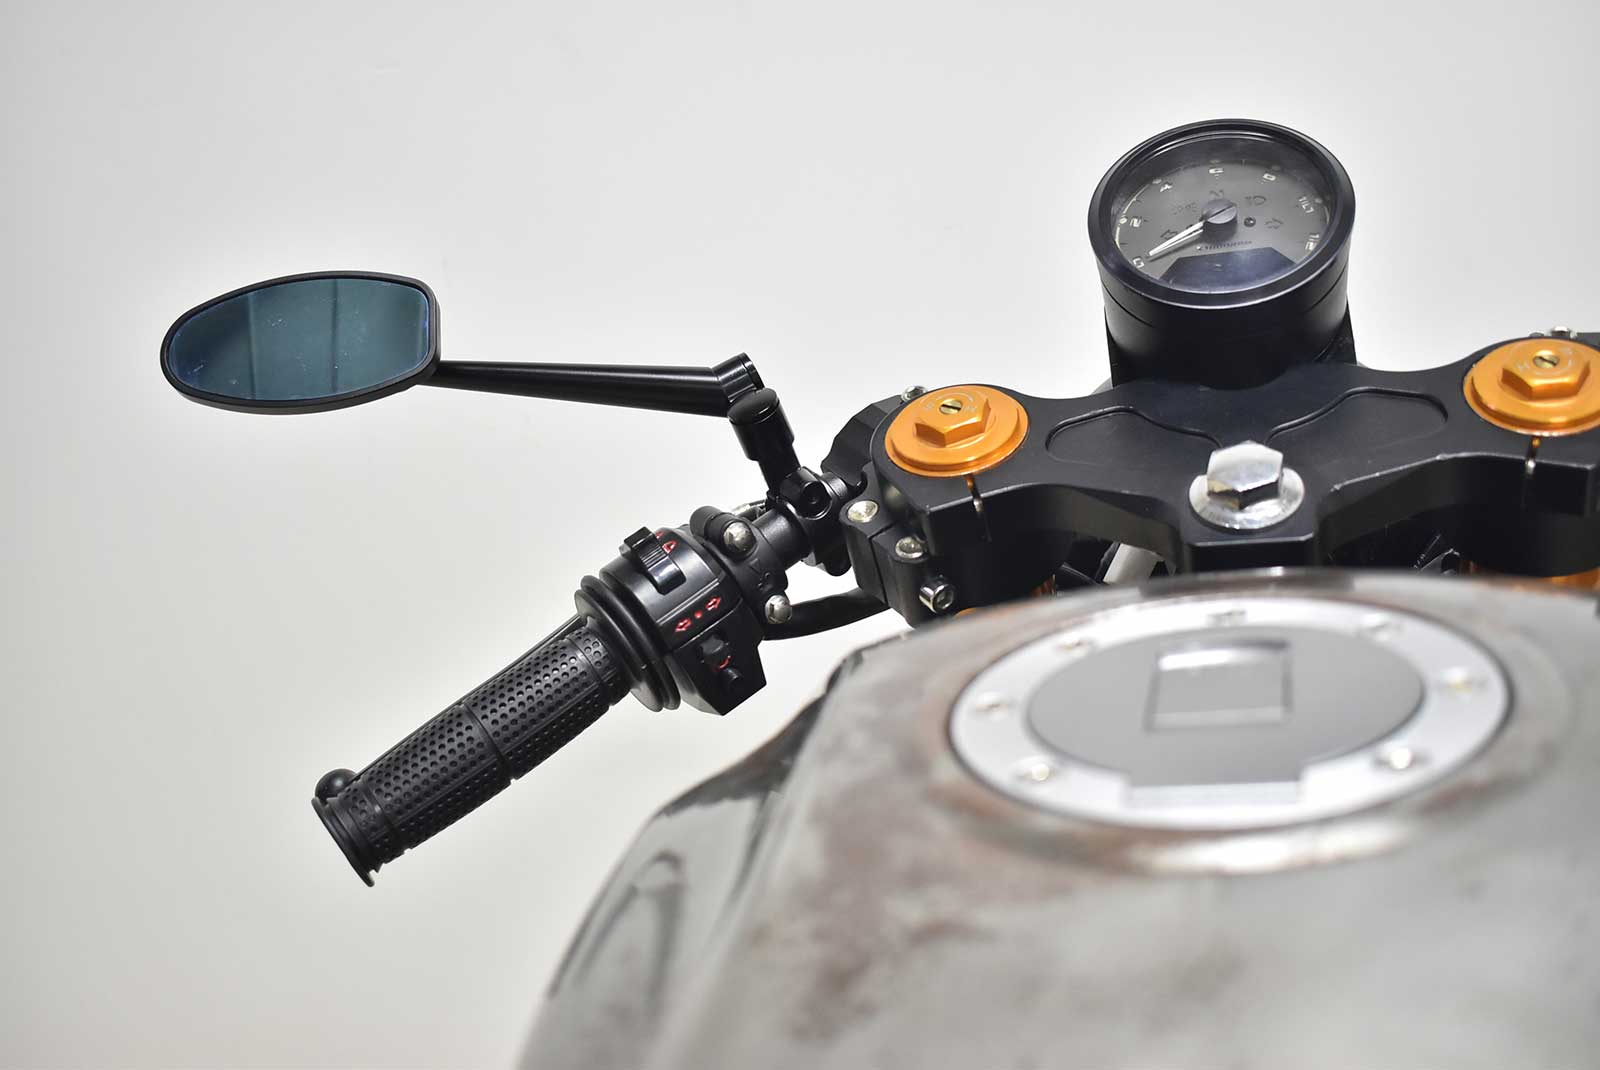 10mm Anti-Colockwise Black Motorcycle Mirror Mount Adaptor